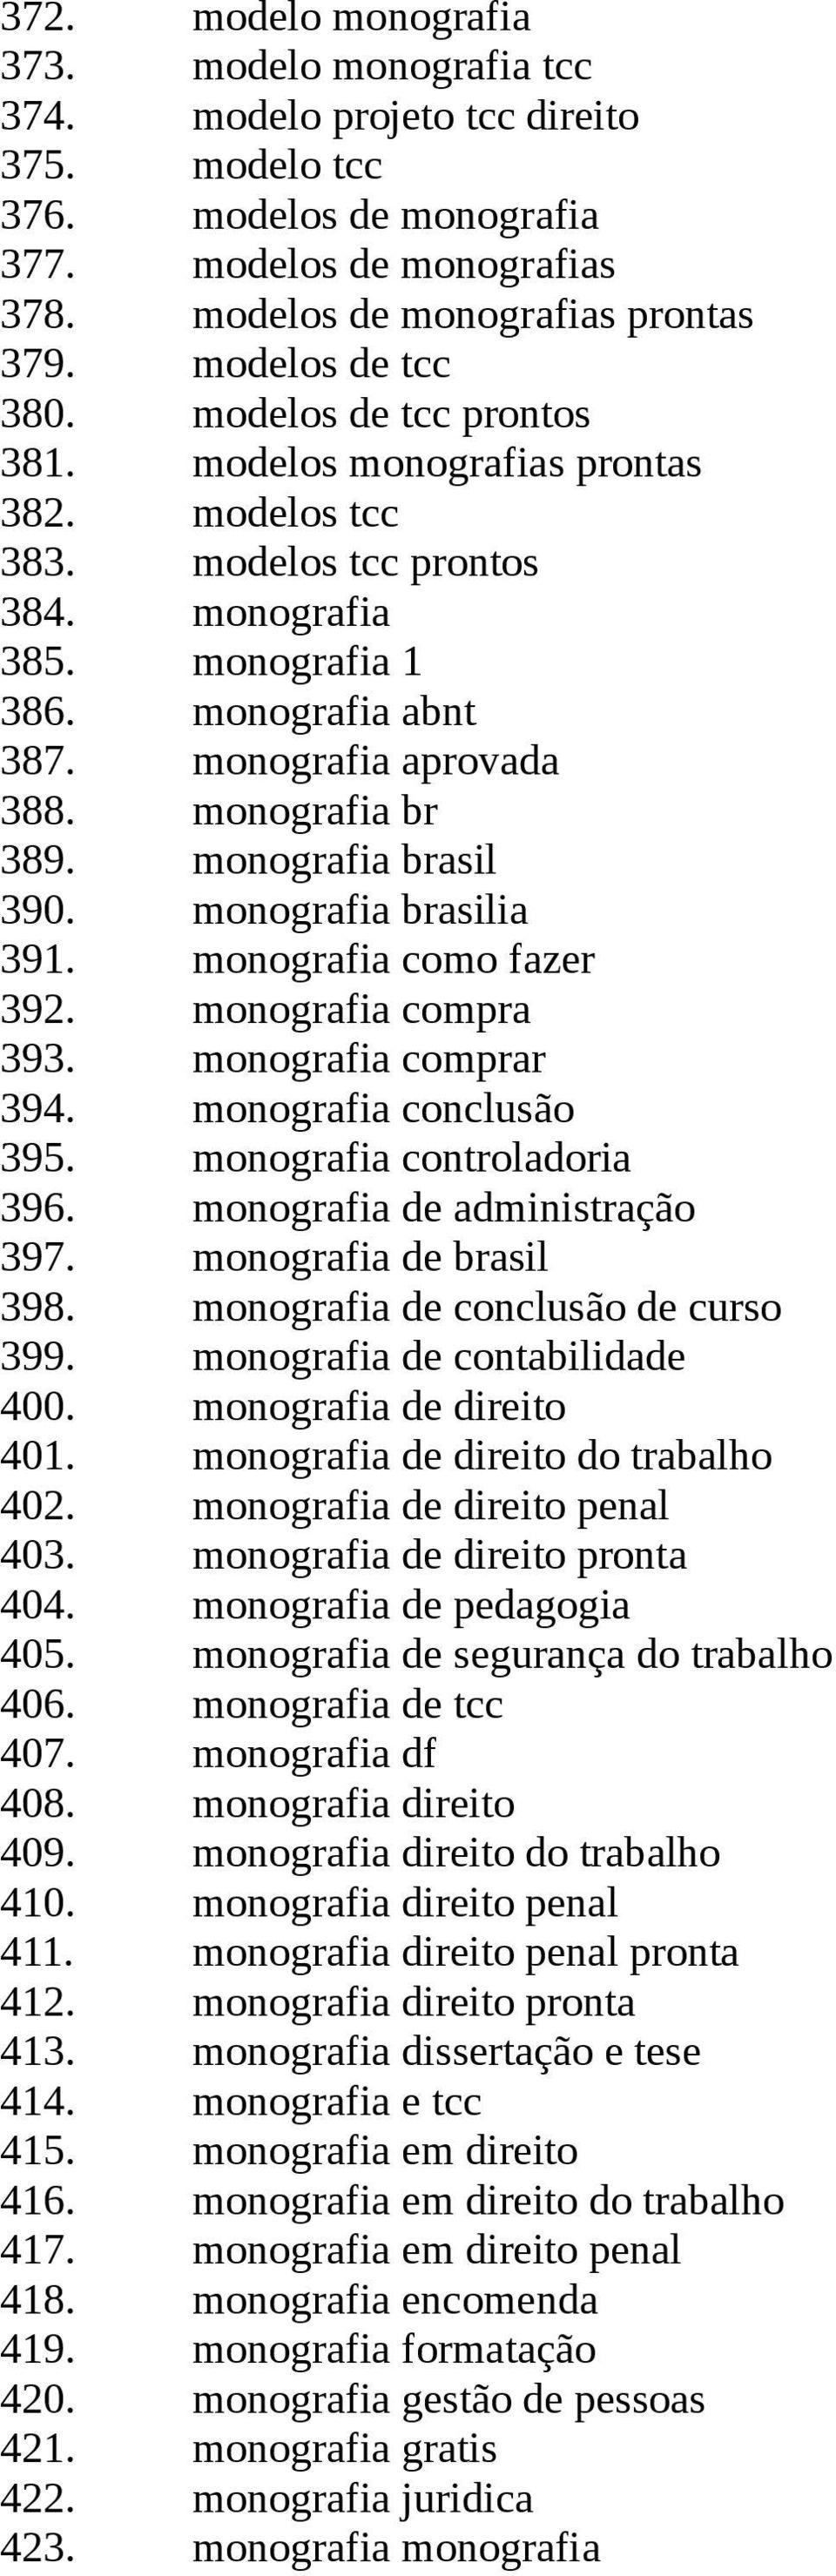 monografia aprovada 388. monografia br 389. monografia brasil 390. monografia brasilia 391. monografia como fazer 392. monografia compra 393. monografia comprar 394. monografia conclusão 395.